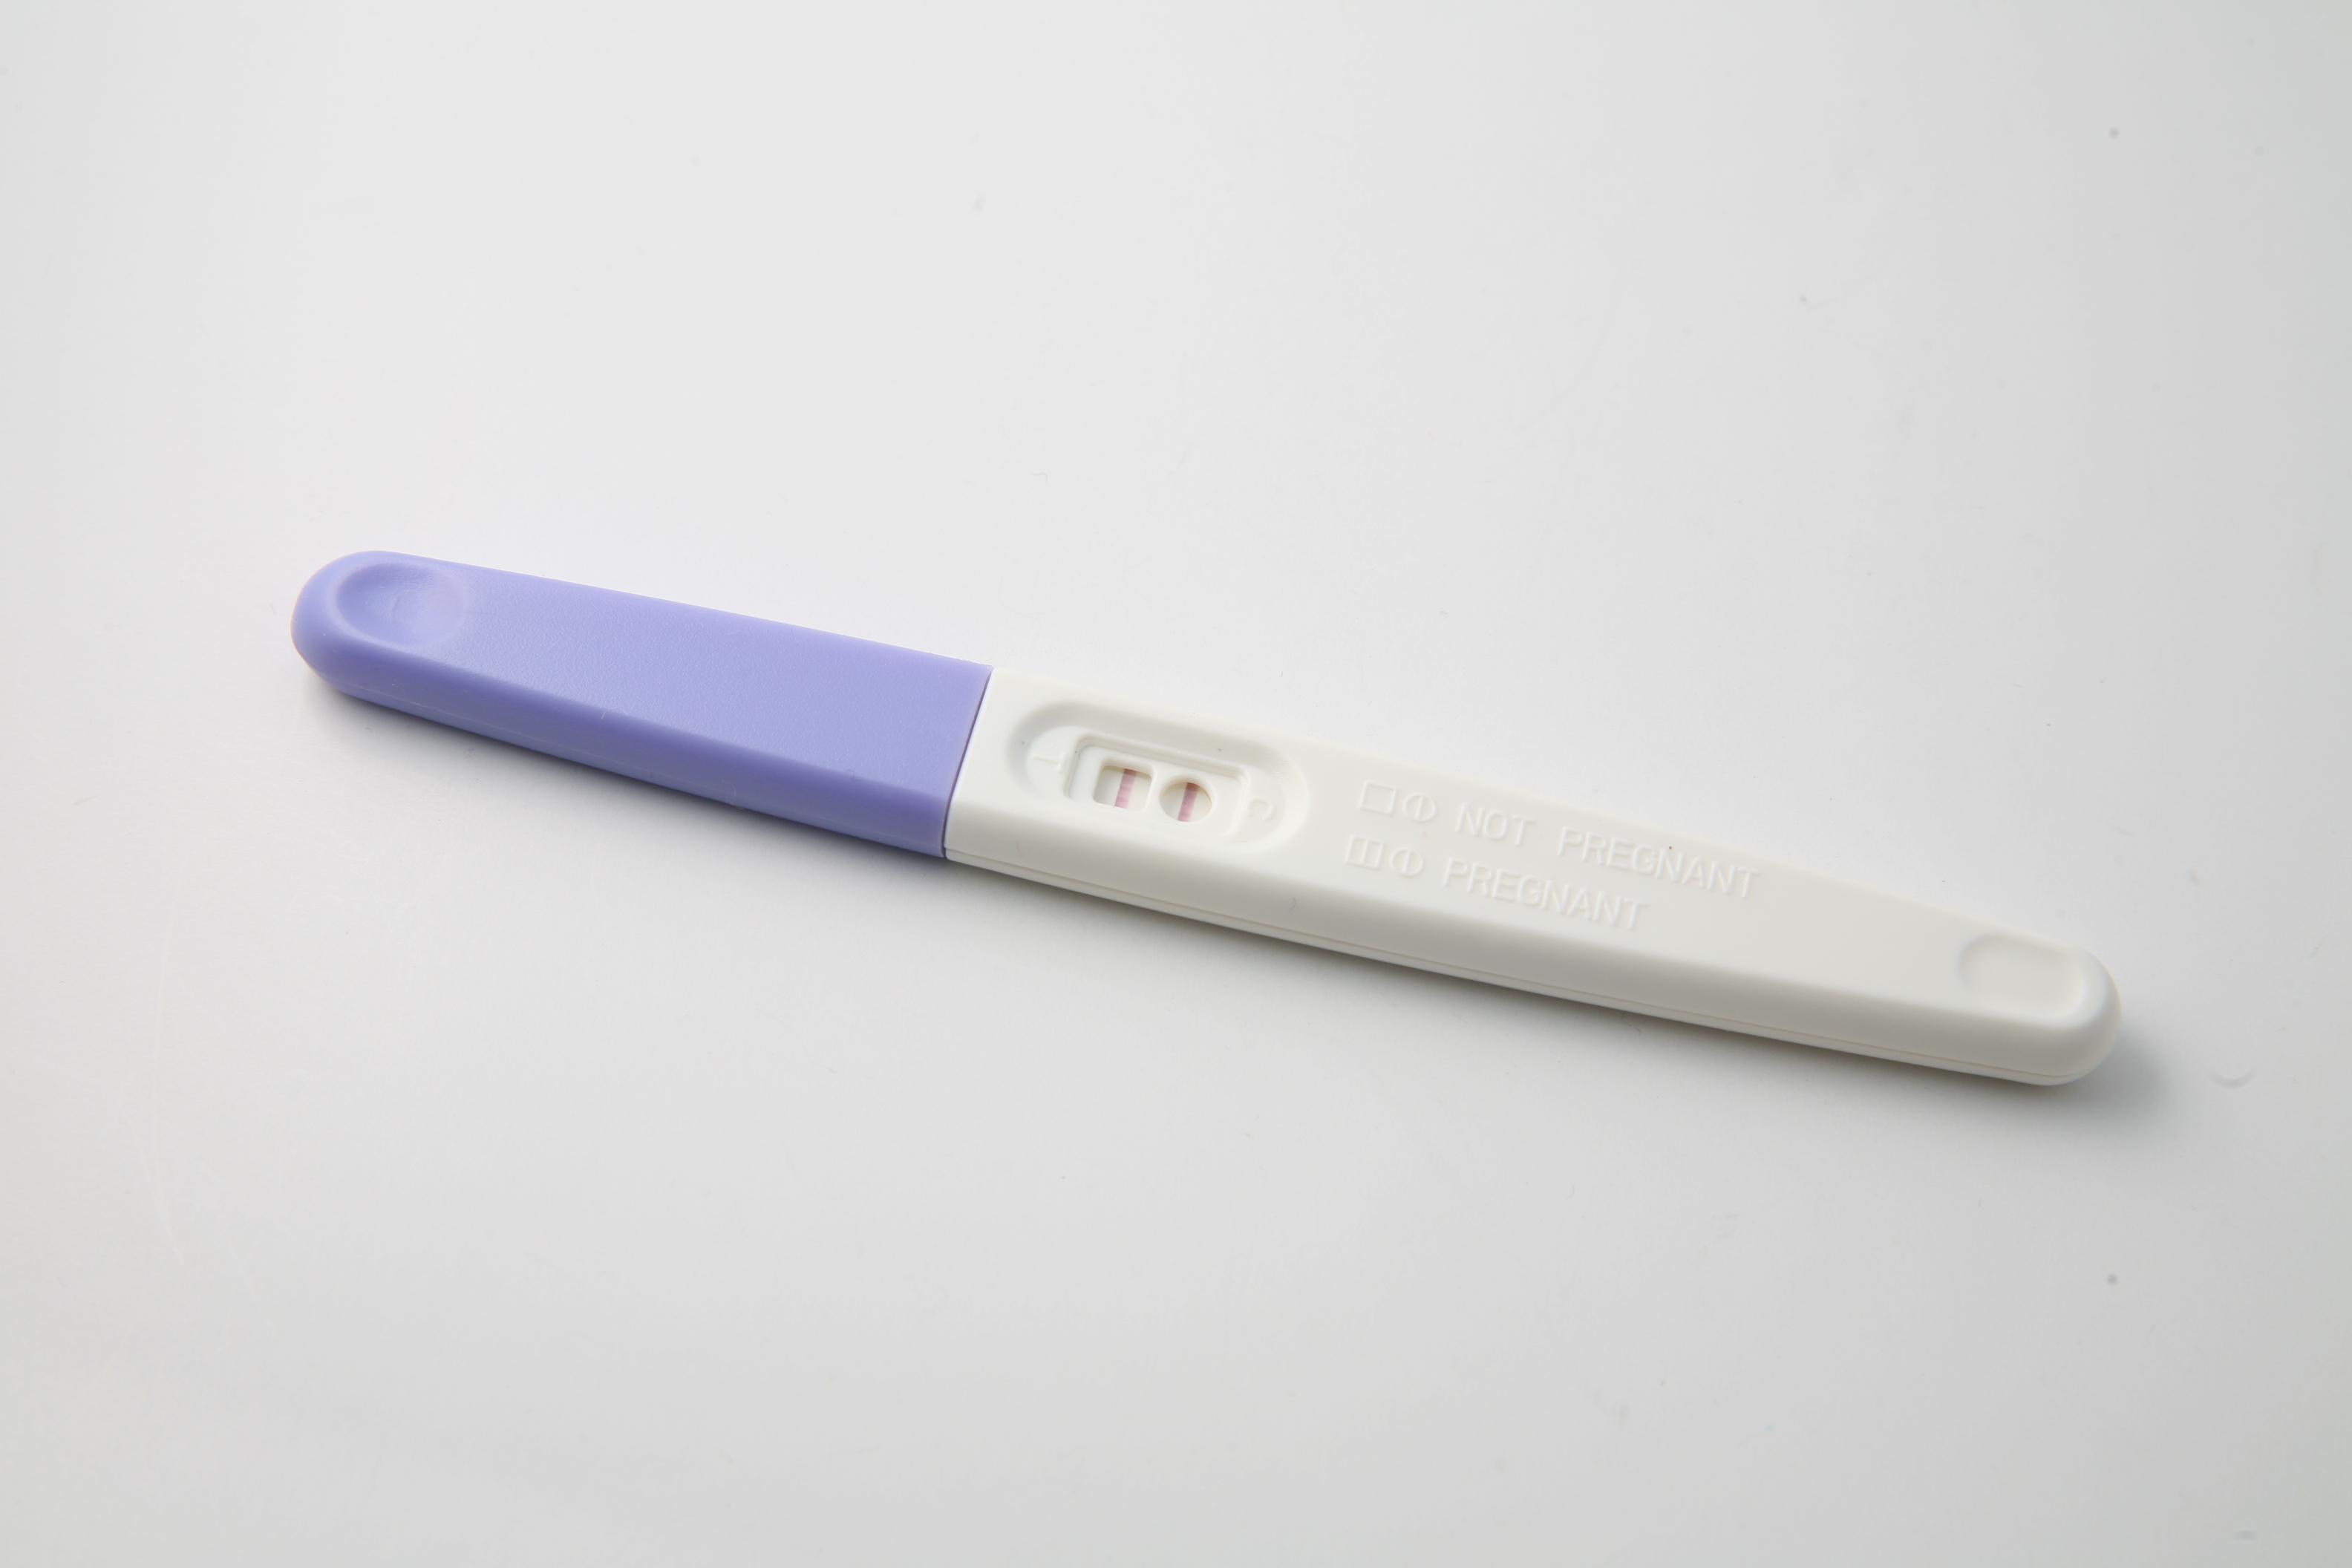 Nøyaktighet og pålitelighet: Anbefalte graviditetstester